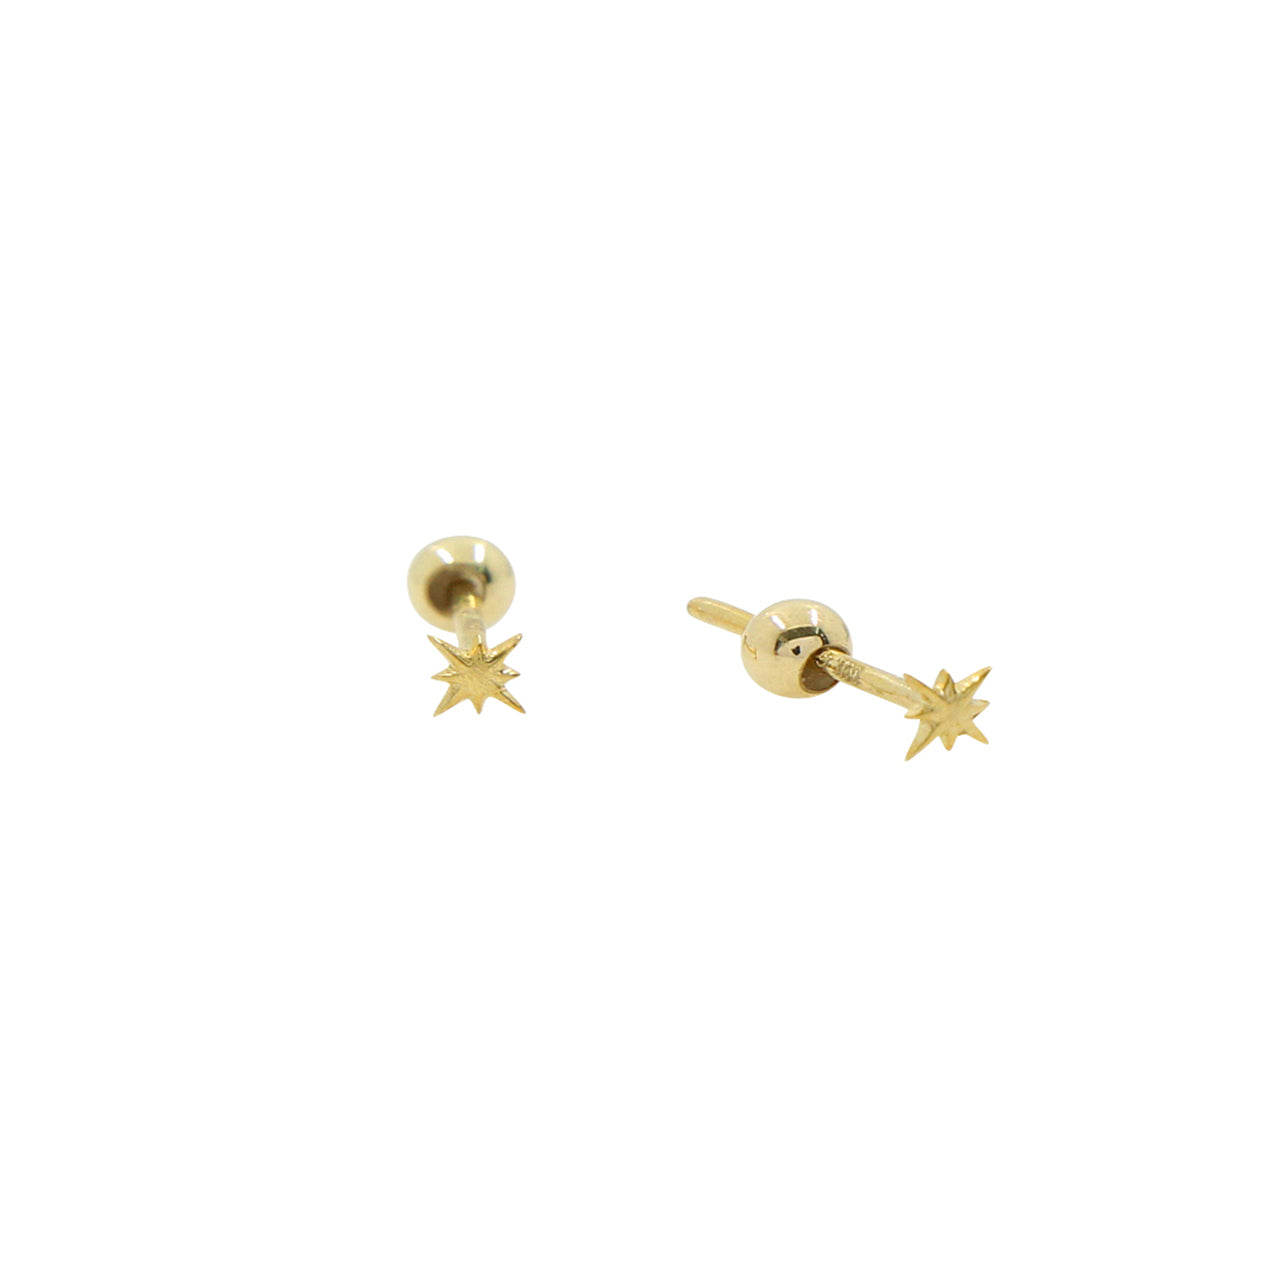 9k mini star earrings